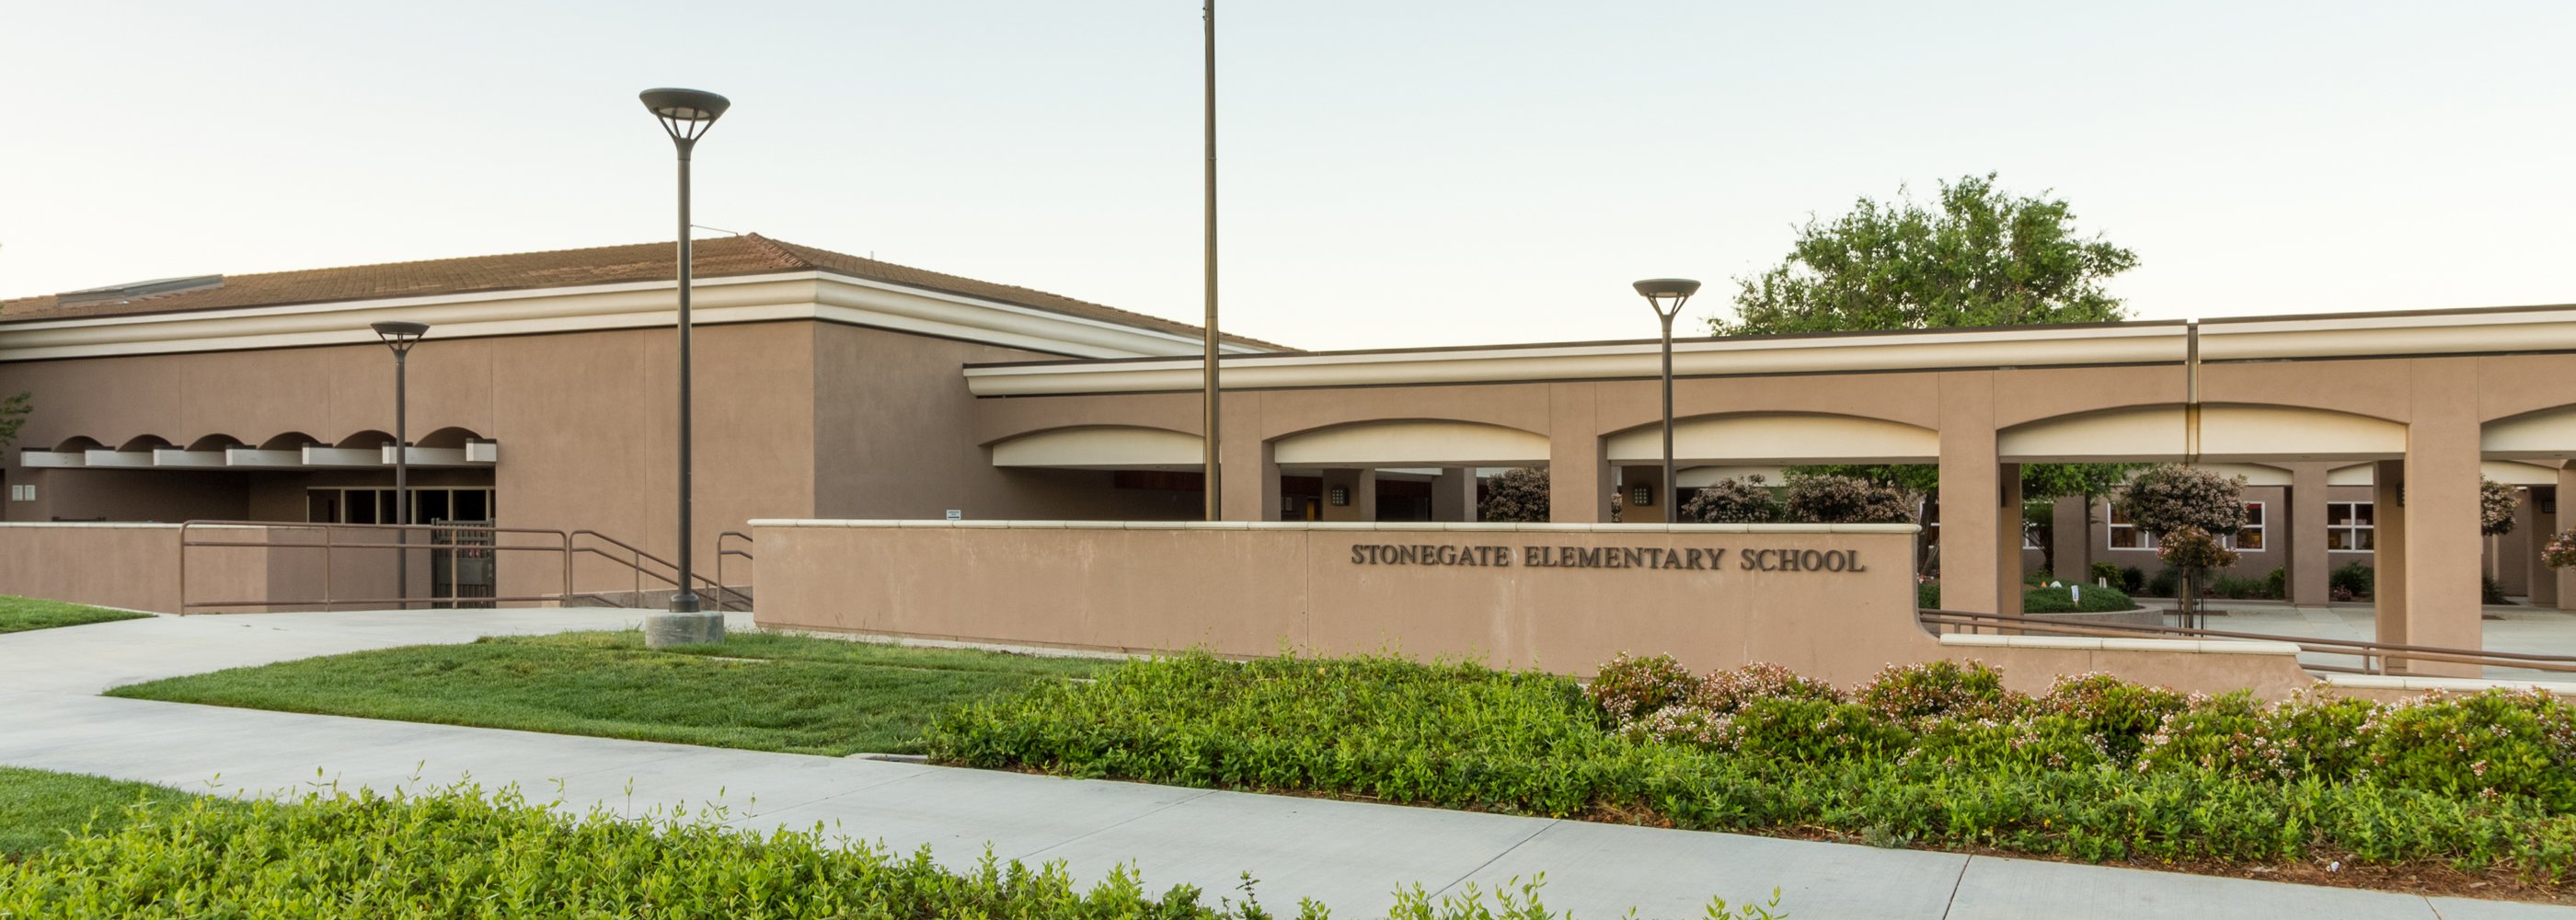 Stonegate Elementary School